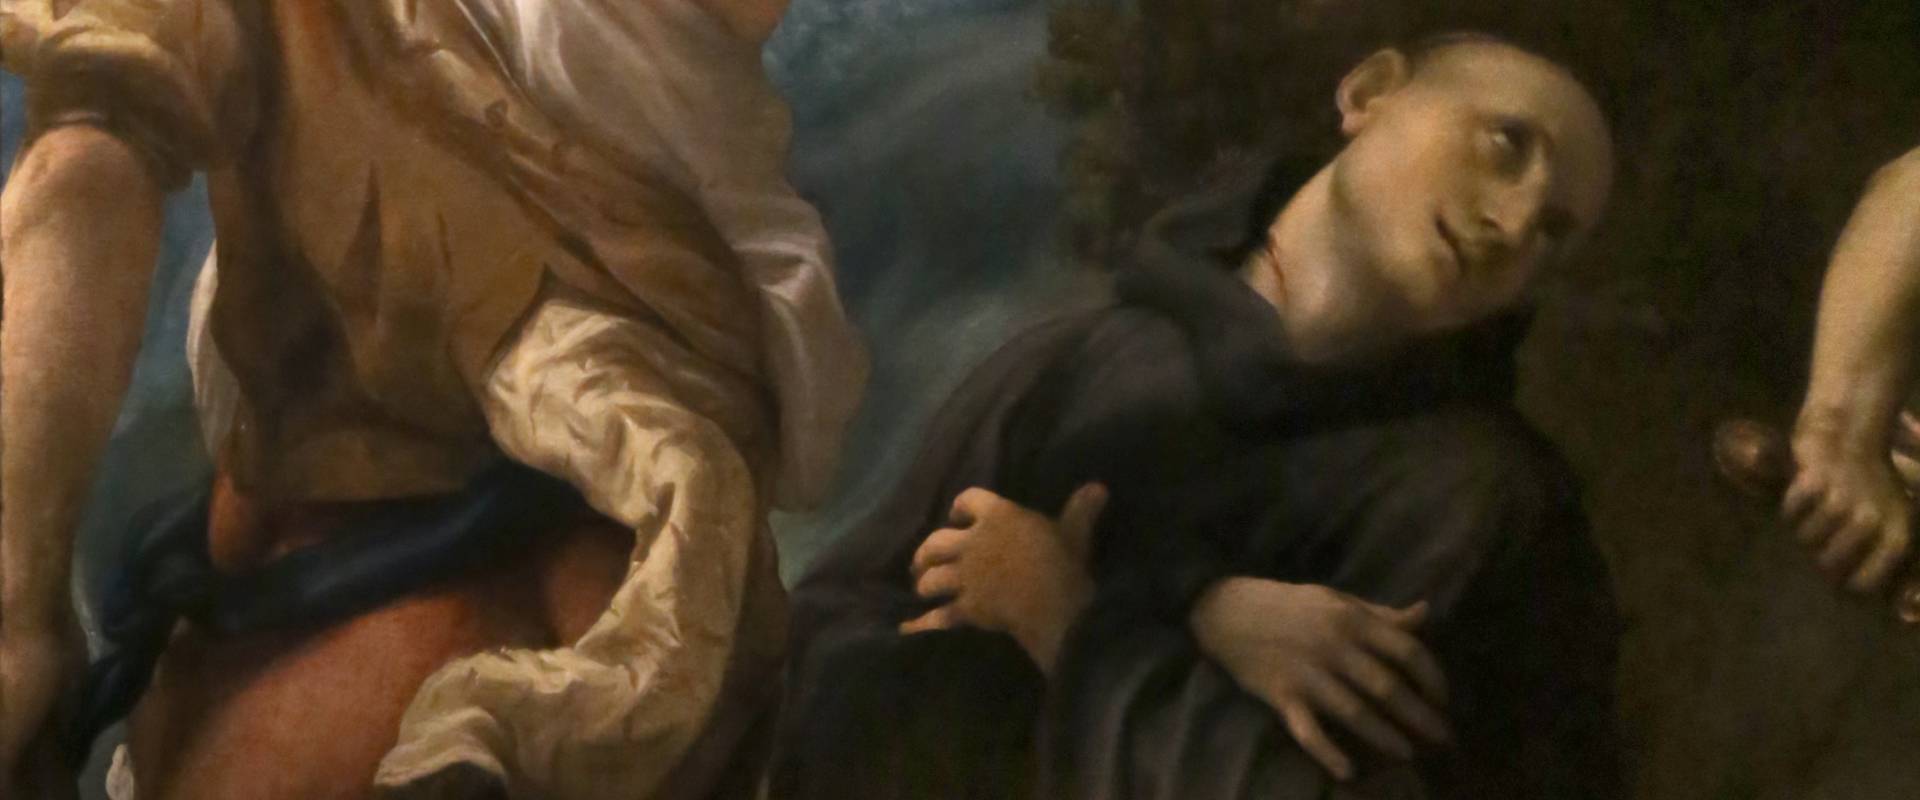 Correggio, martirio dei ss. placido, flavia, eutichio e vittorino, 1524 ca. 03 foto di Sailko